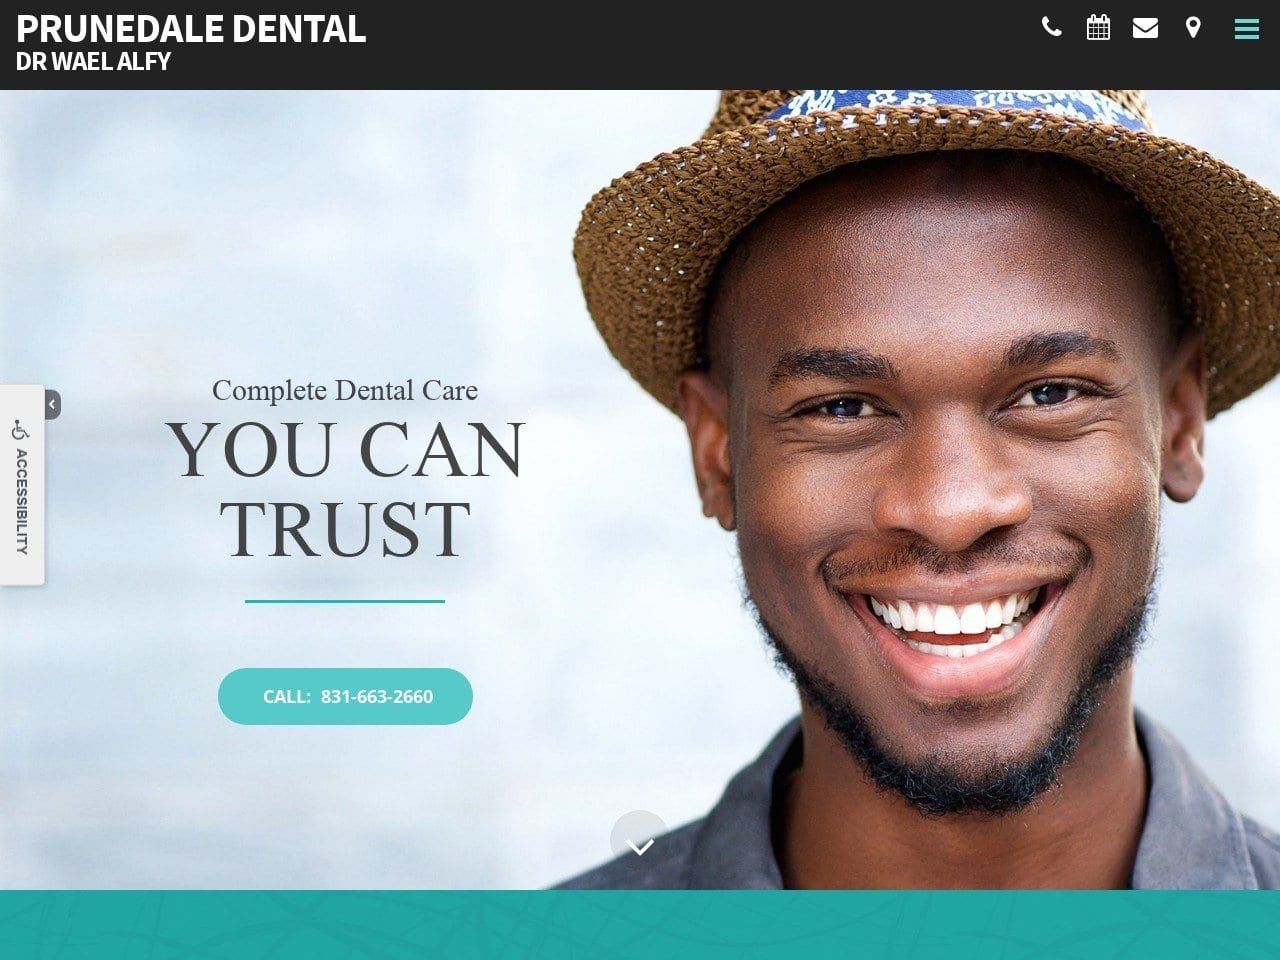 Prunedale Dental Website Screenshot from prunedaledental.com